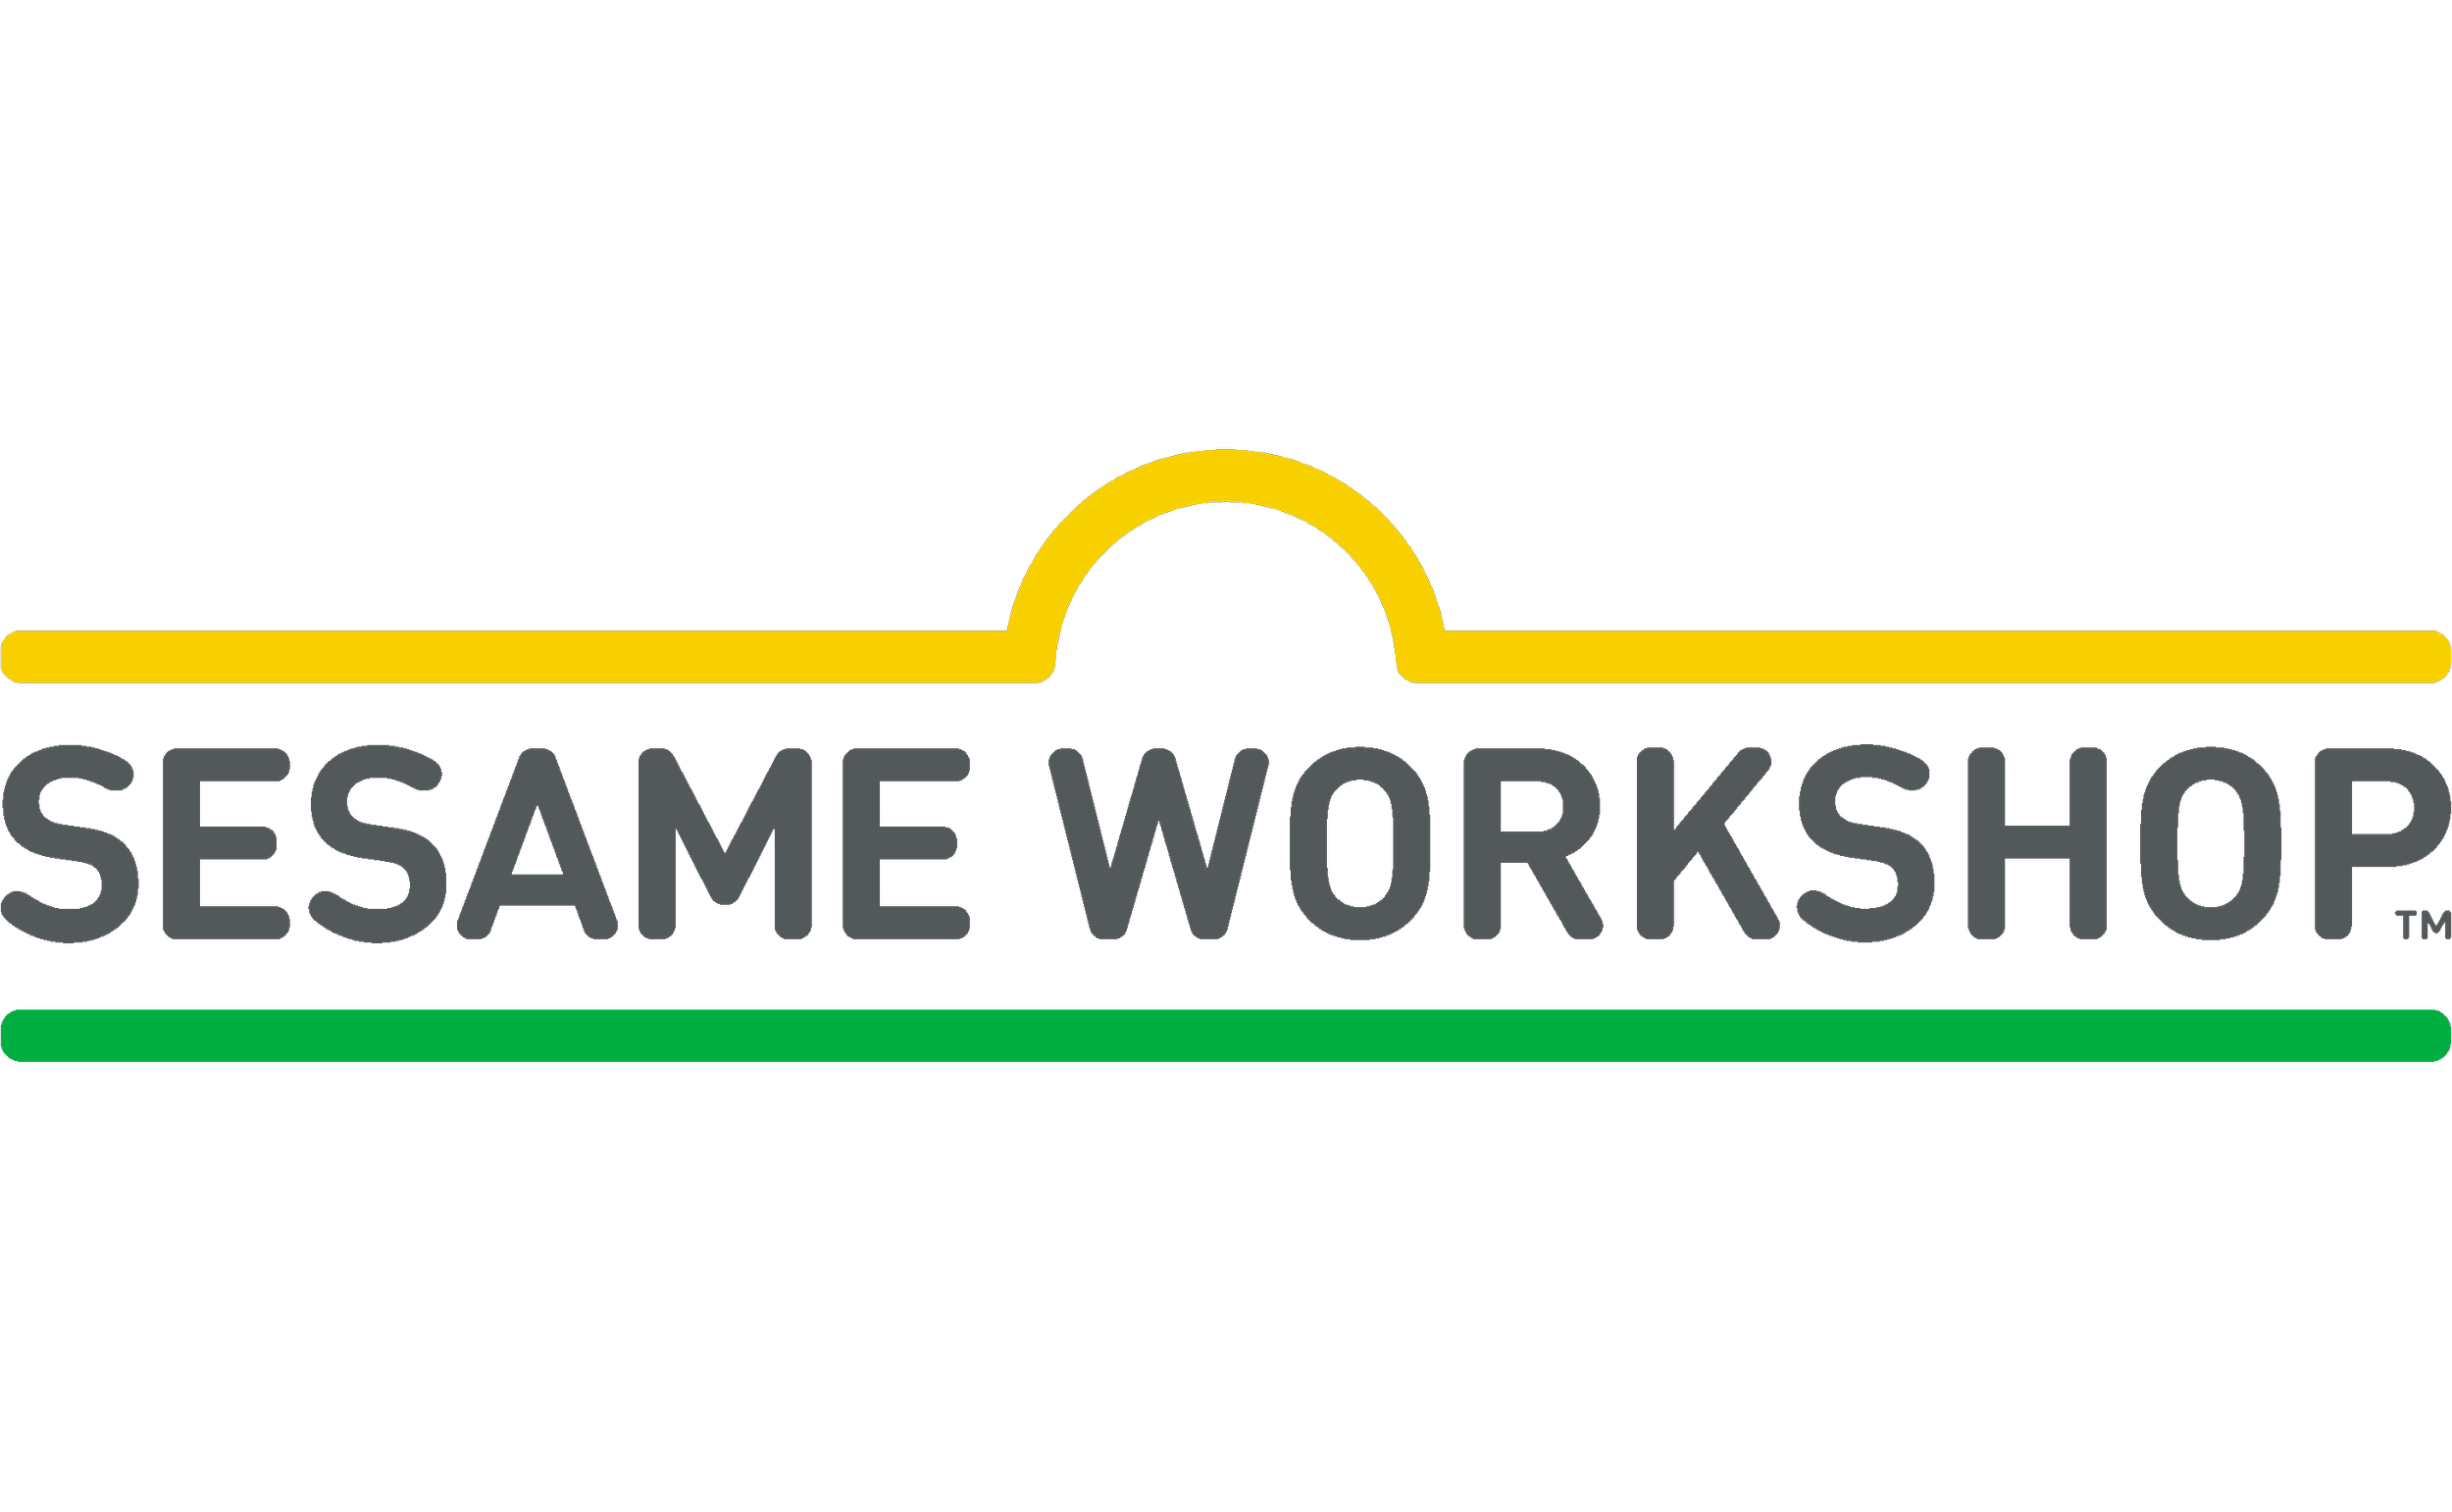 Sesame_Workshop_logo_PNG1.png